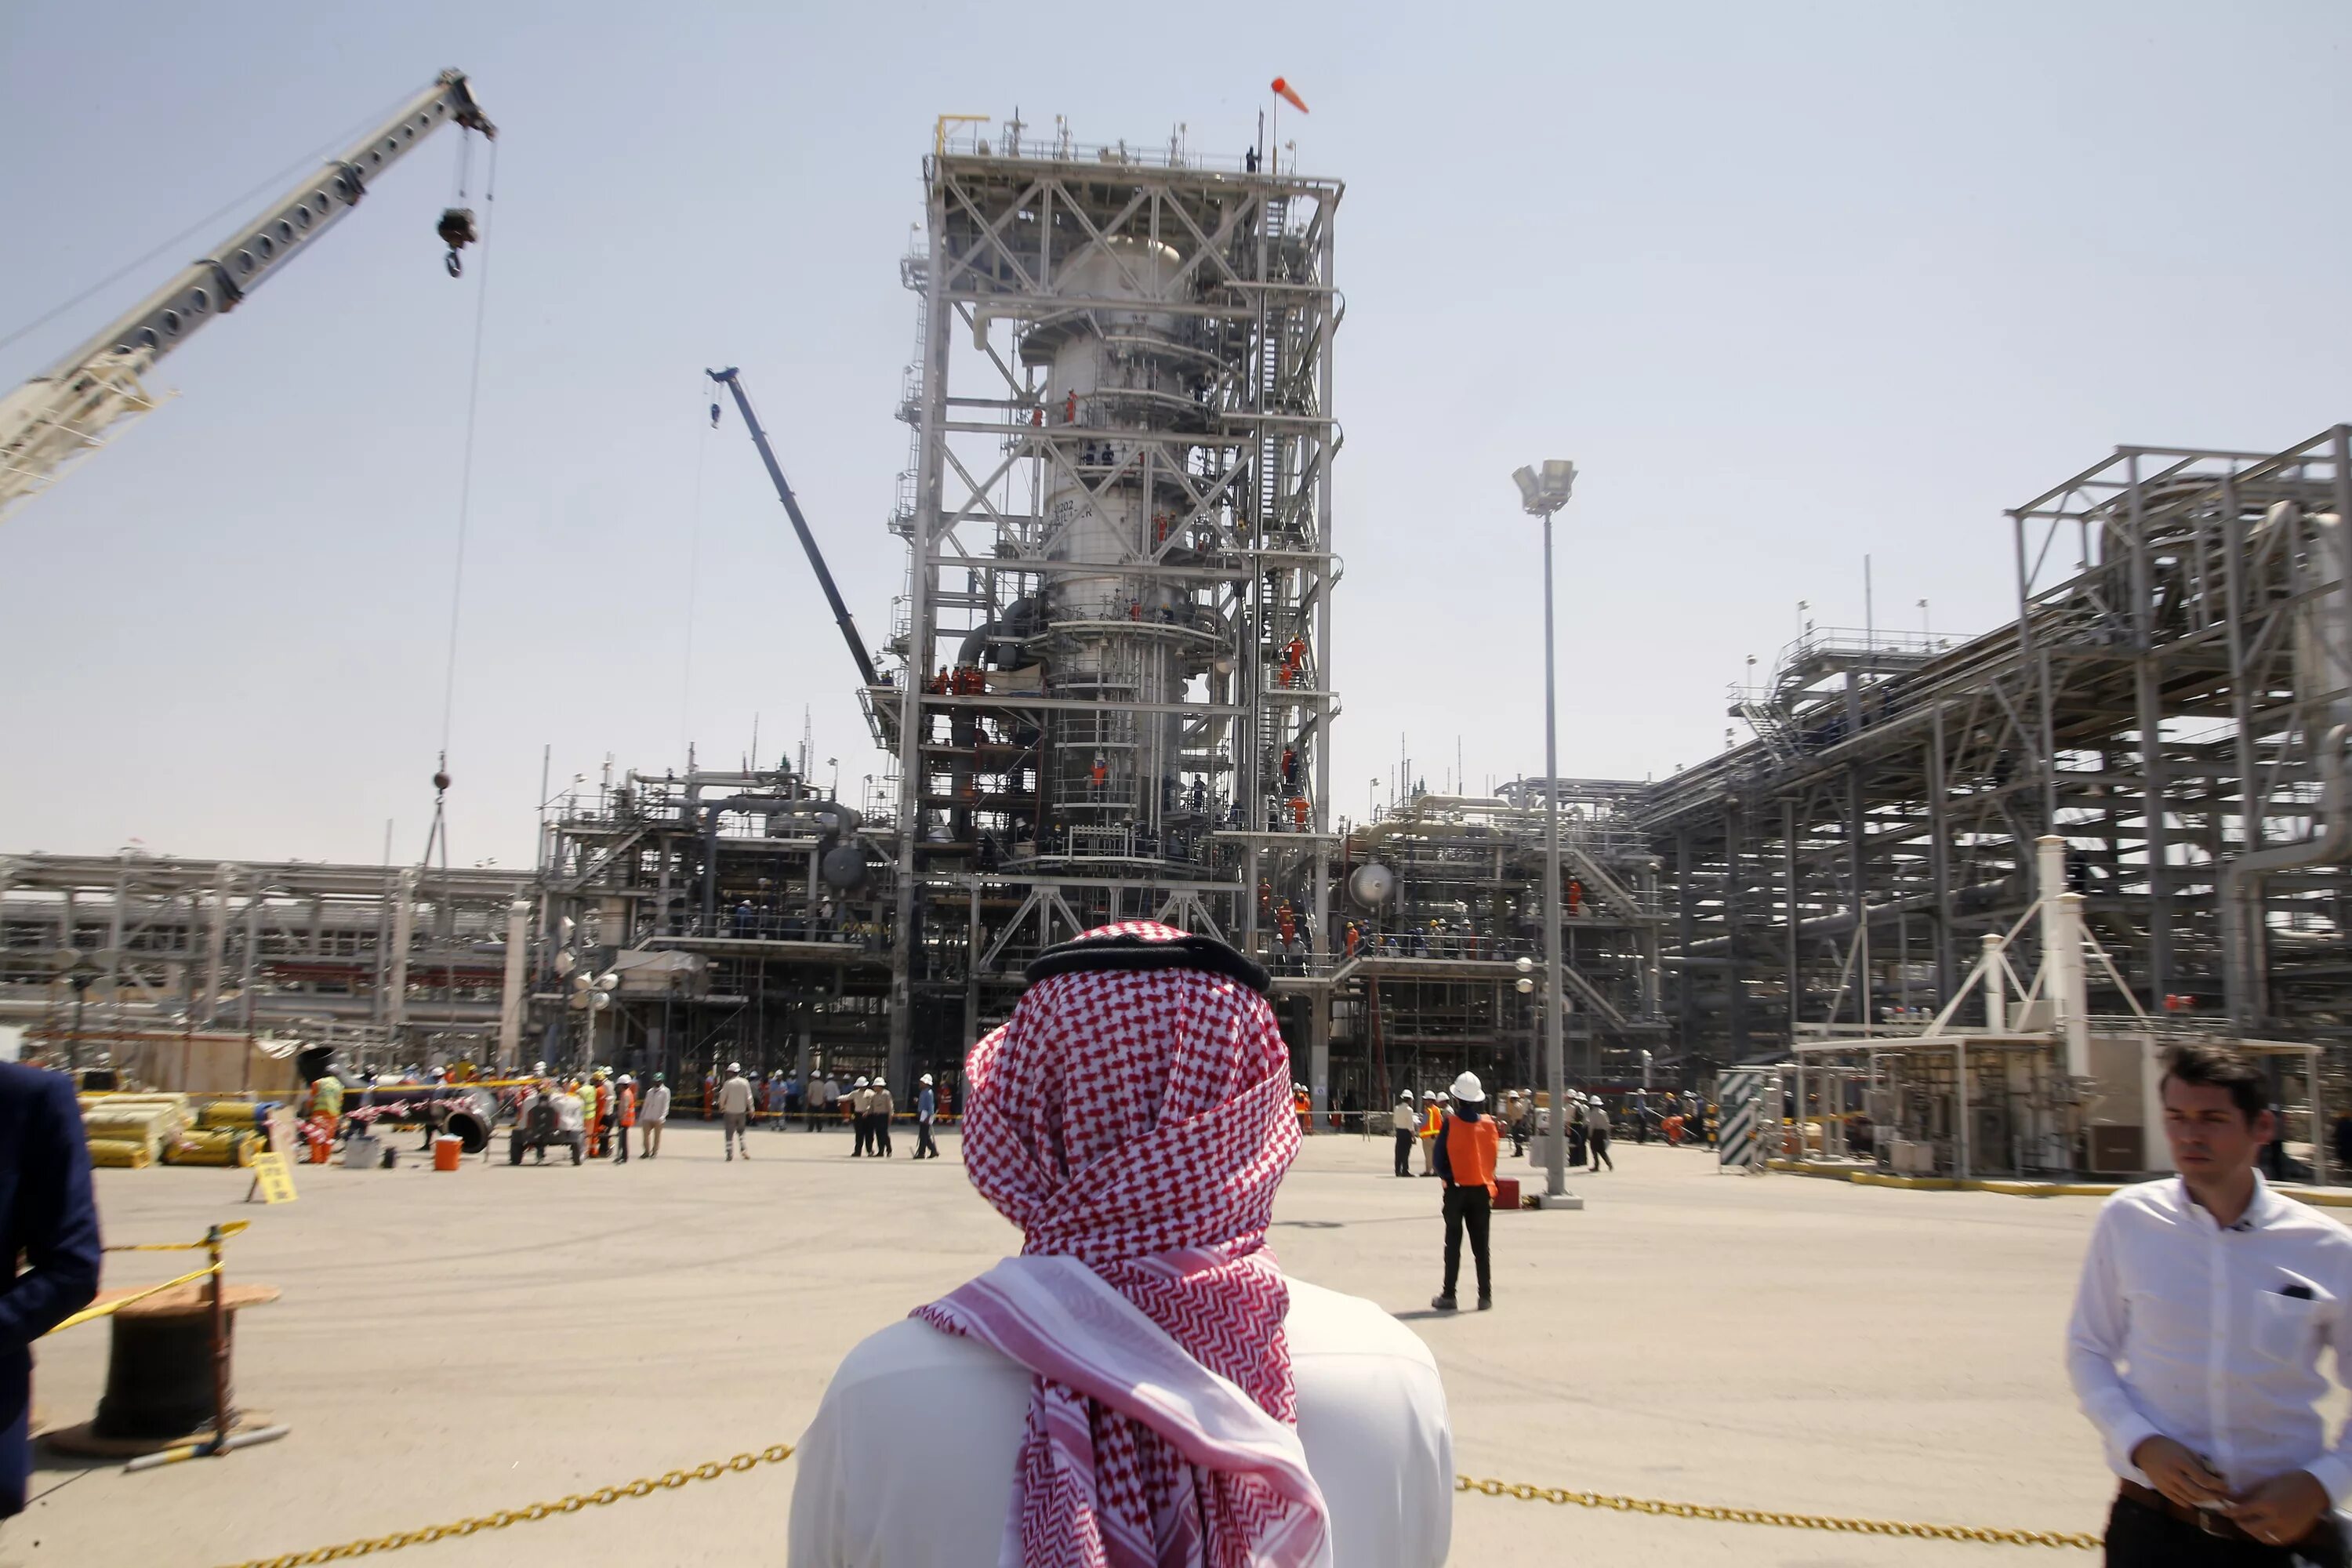 Нефтеперерабатывающий завод в Саудовской Аравии. Объединённые арабские эмираты добыча нефти. Саудовская Аравия нефтедобыча. Нефтедобыча в ОАЭ.